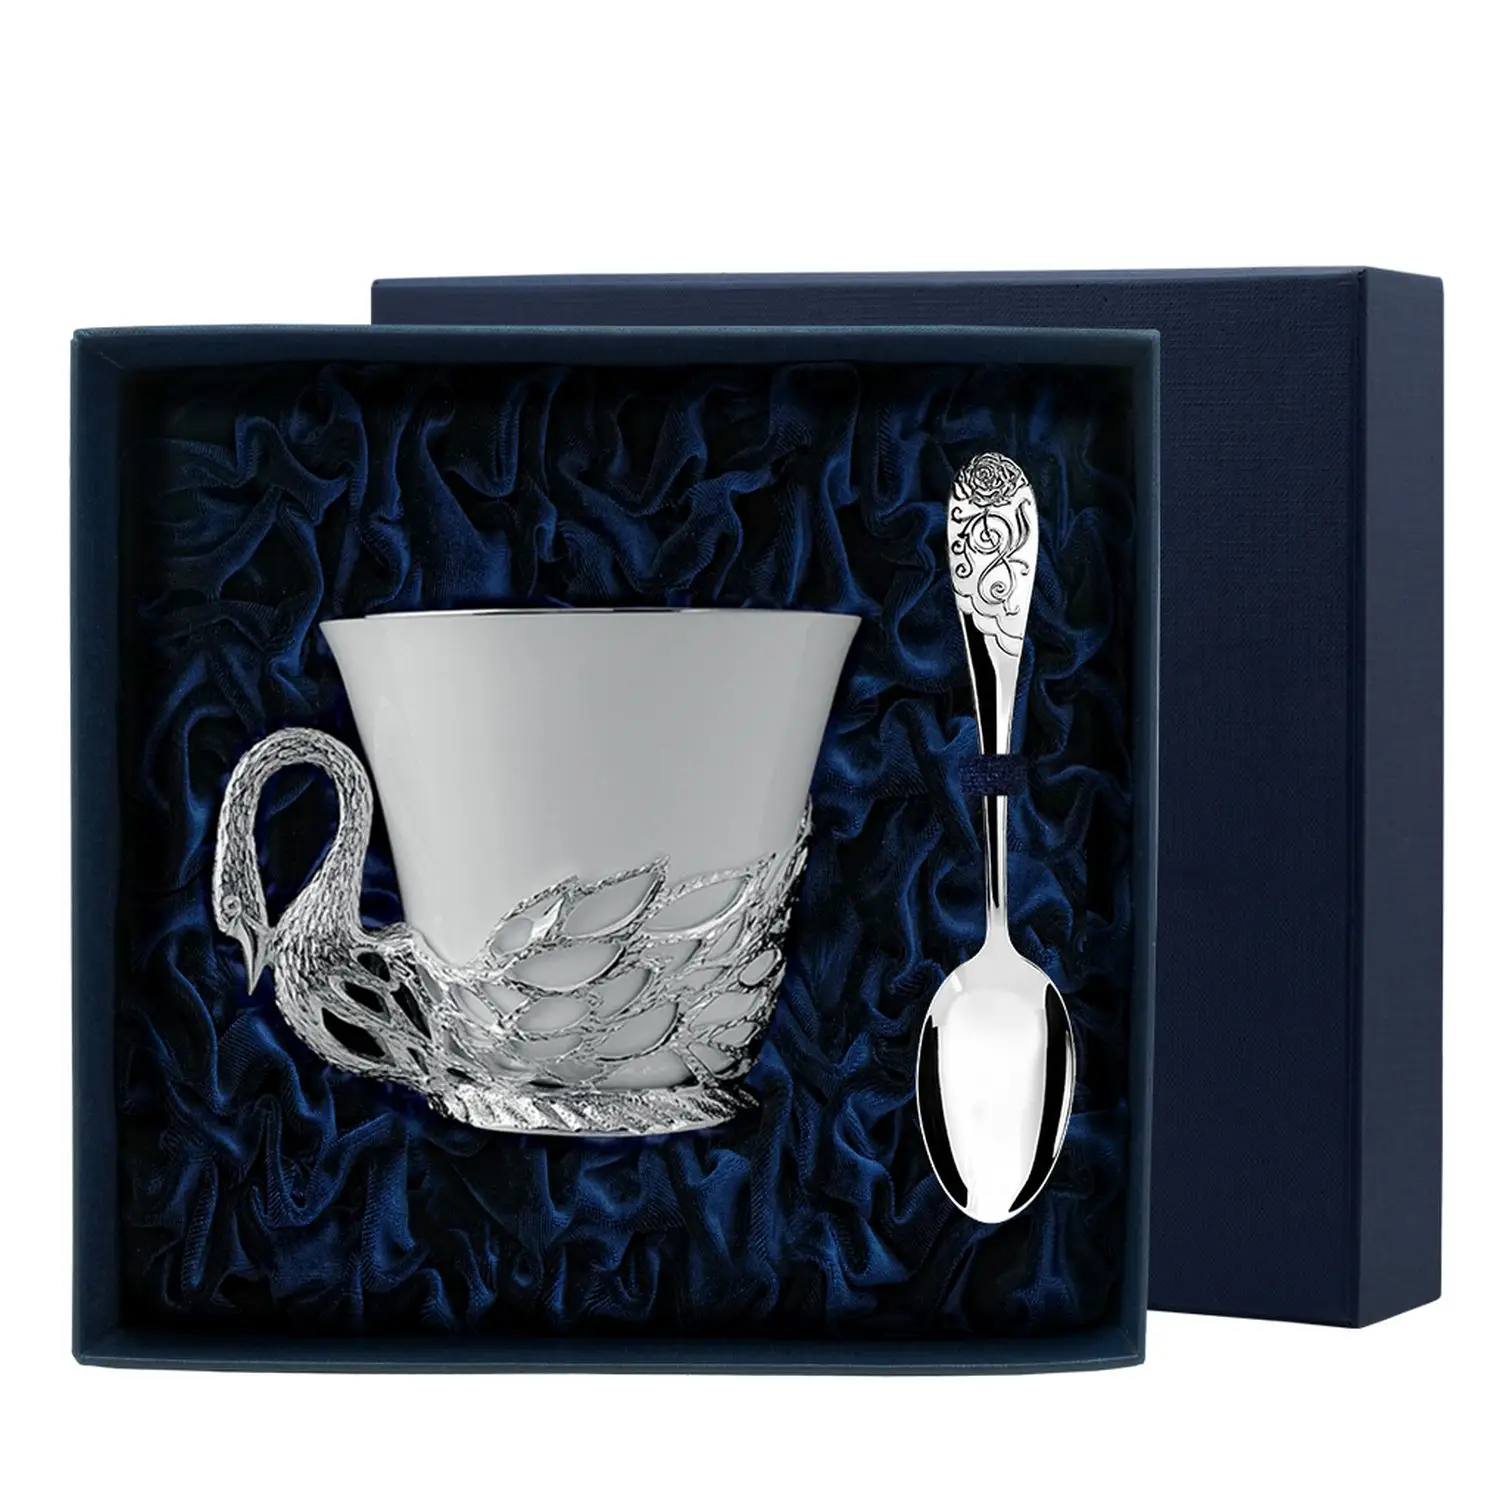 Набор чайная чашка Лебедь: ложка, чашка (Серебро 925) набор чайная чашка куница ложка чашка серебро 925